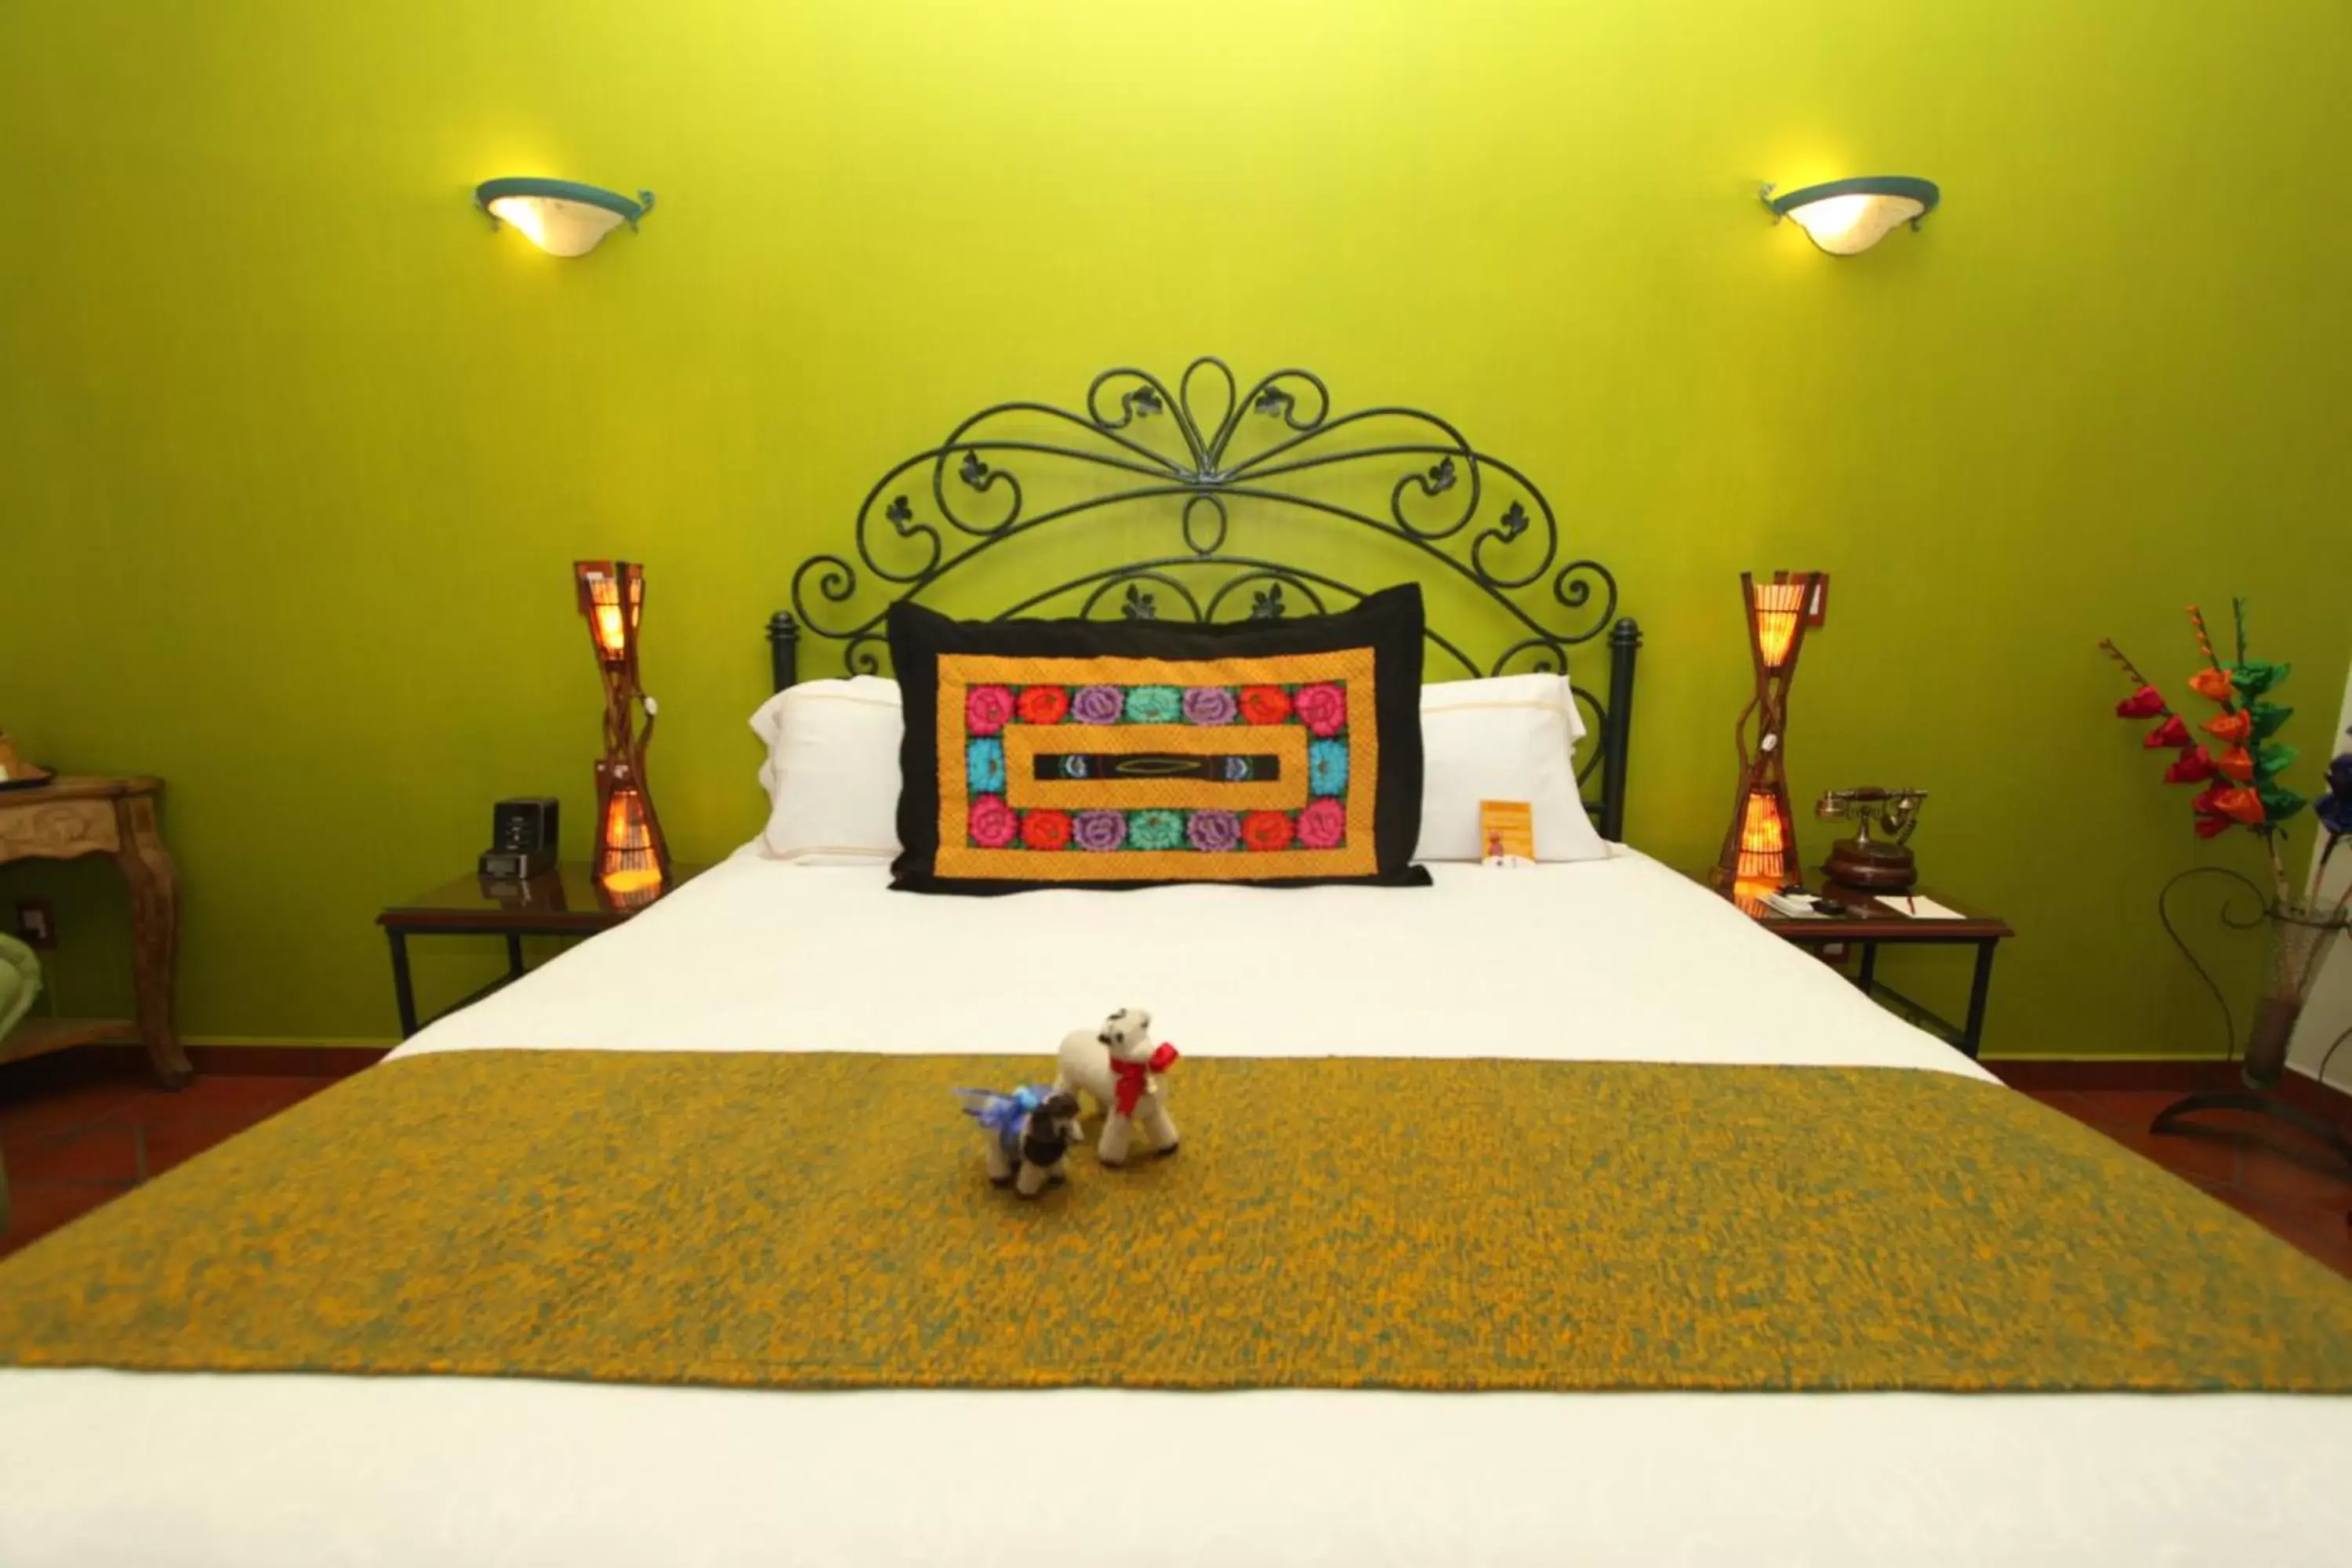 Bed in Hotel Boutique Parador San Miguel Oaxaca